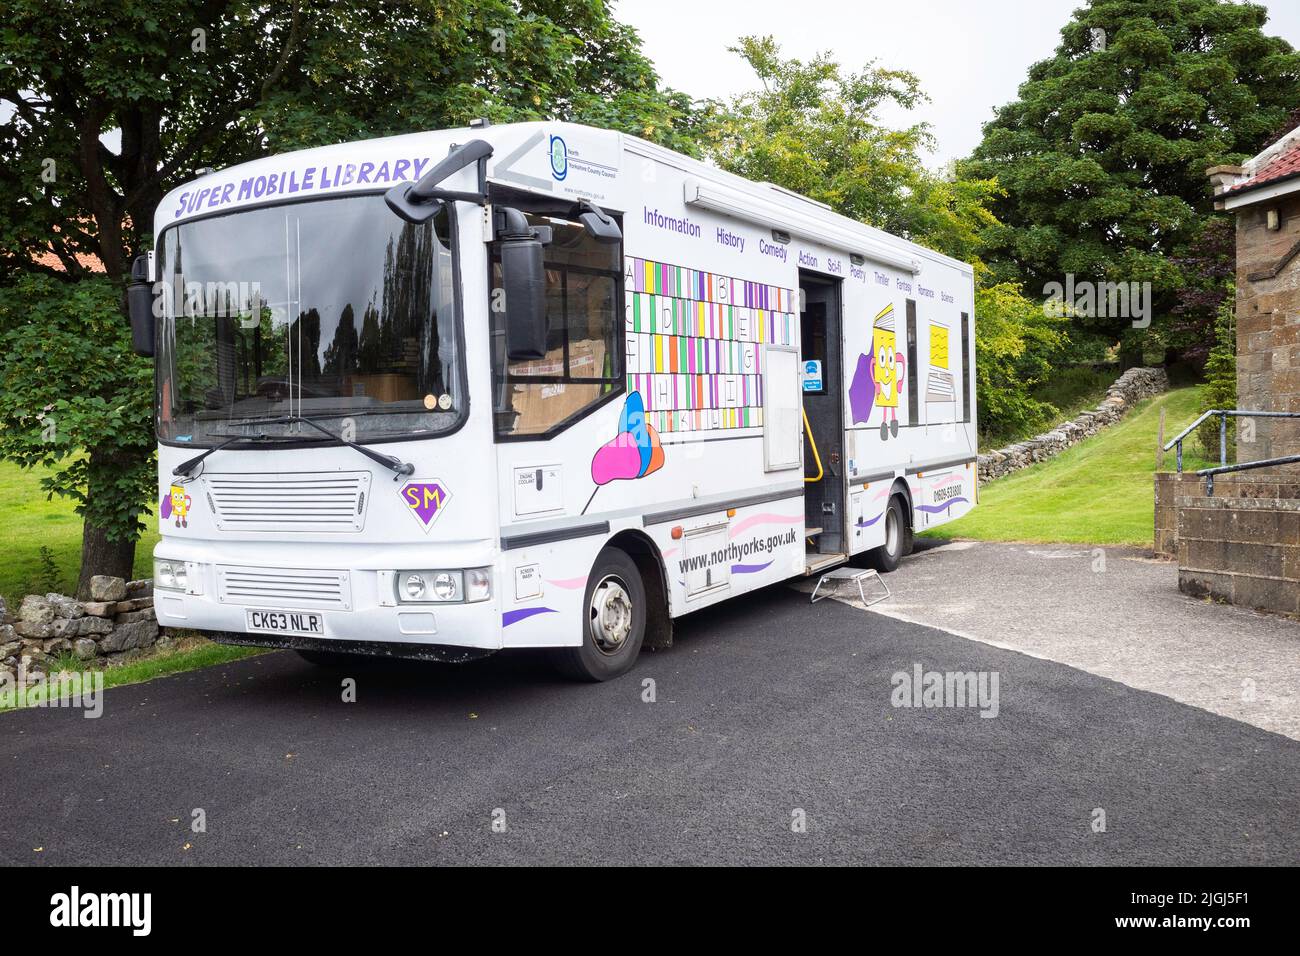 Ein Super Mobile Bibliothek von North Yorkshire County Council für die Gäste Bibliothek Dienstleistungen in ländlichen Dörfer Stockfoto